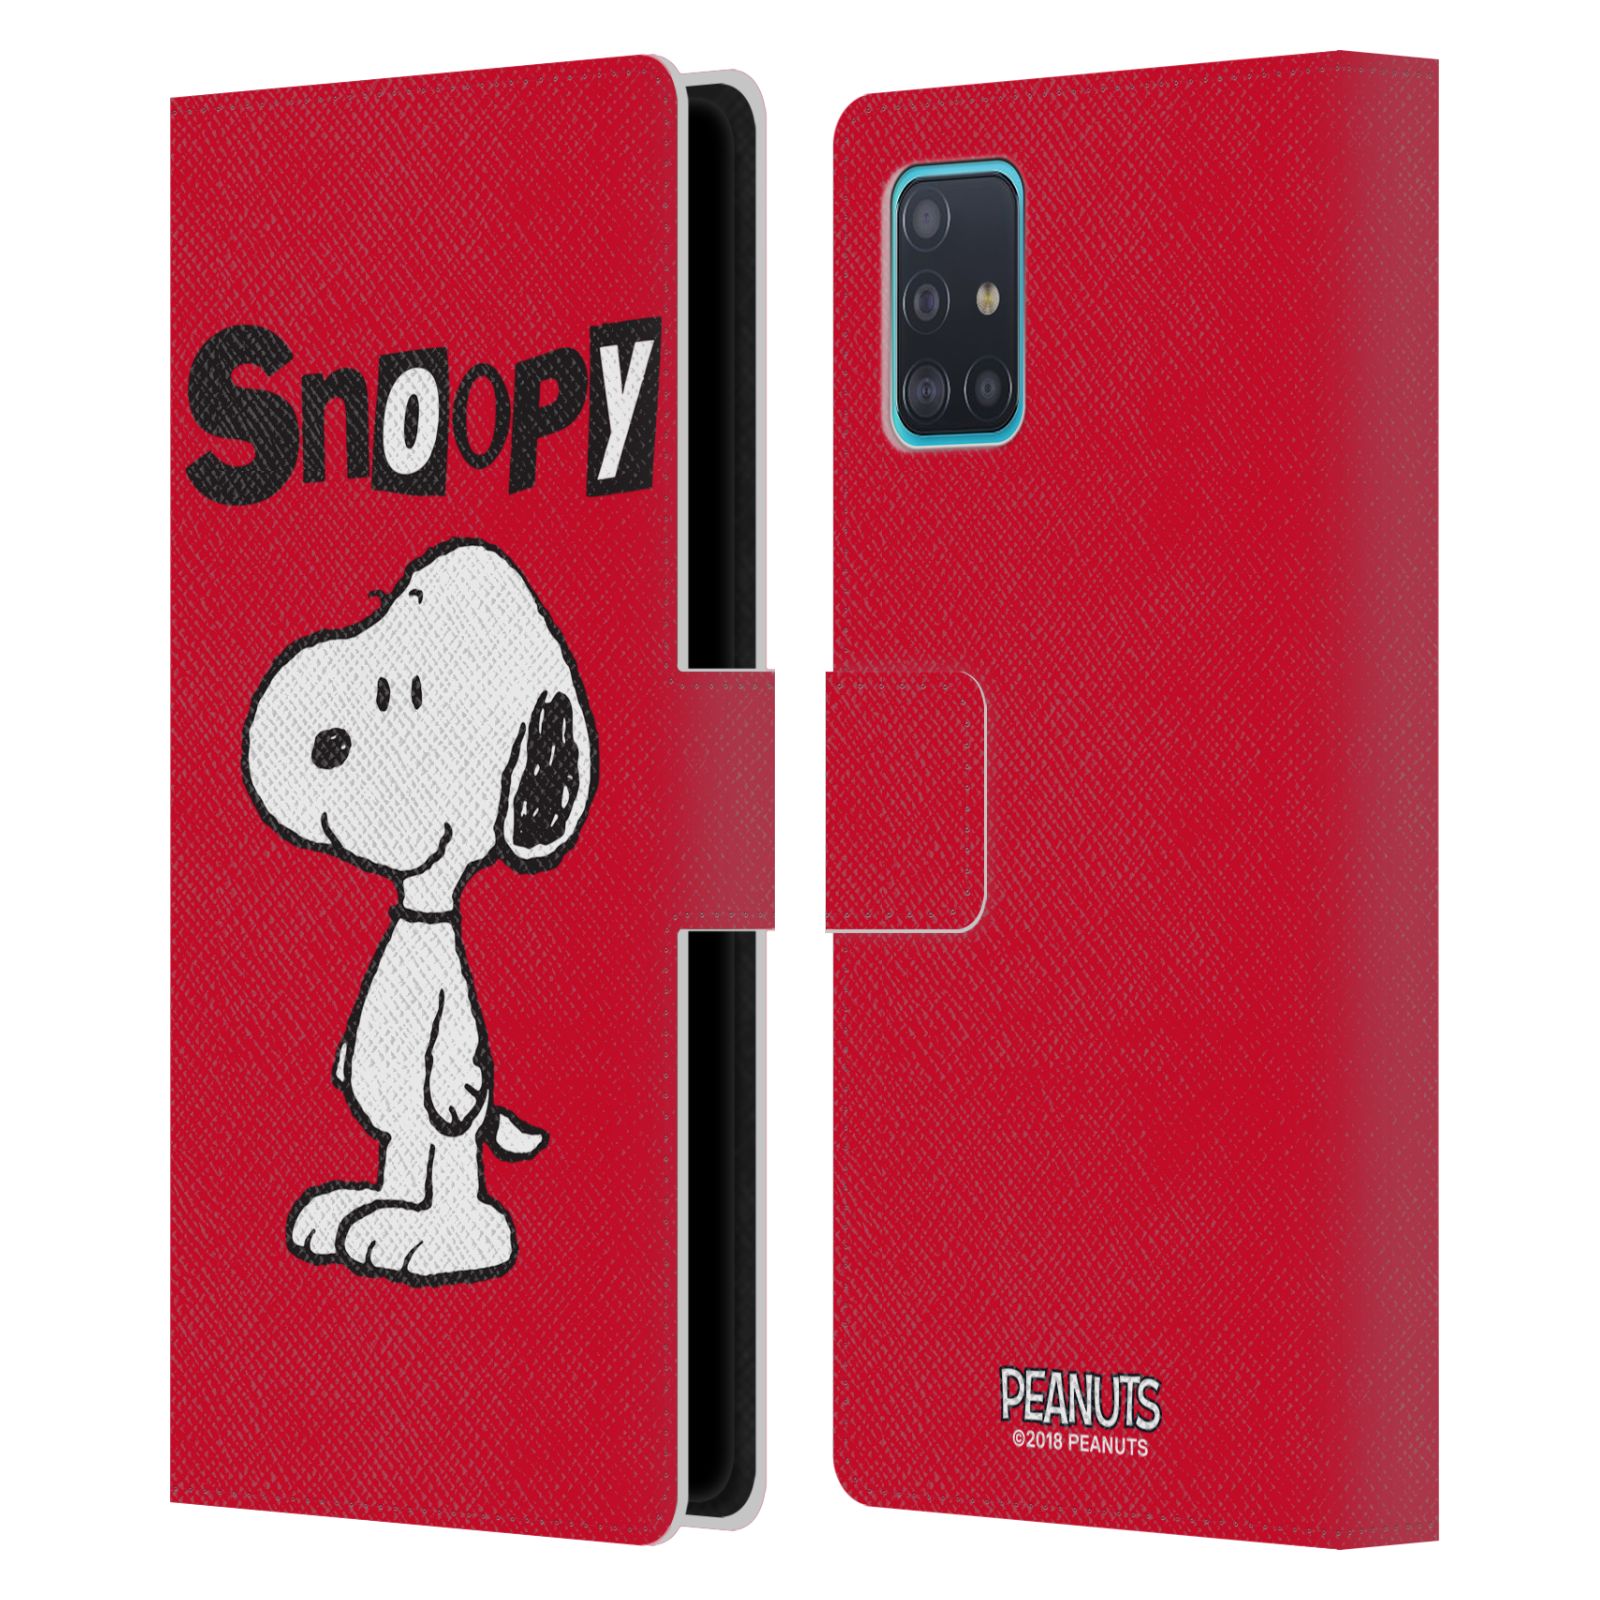 Pouzdro na mobil Samsung Galaxy A51 - HEAD CASE - Peanuts - Snoopy červená